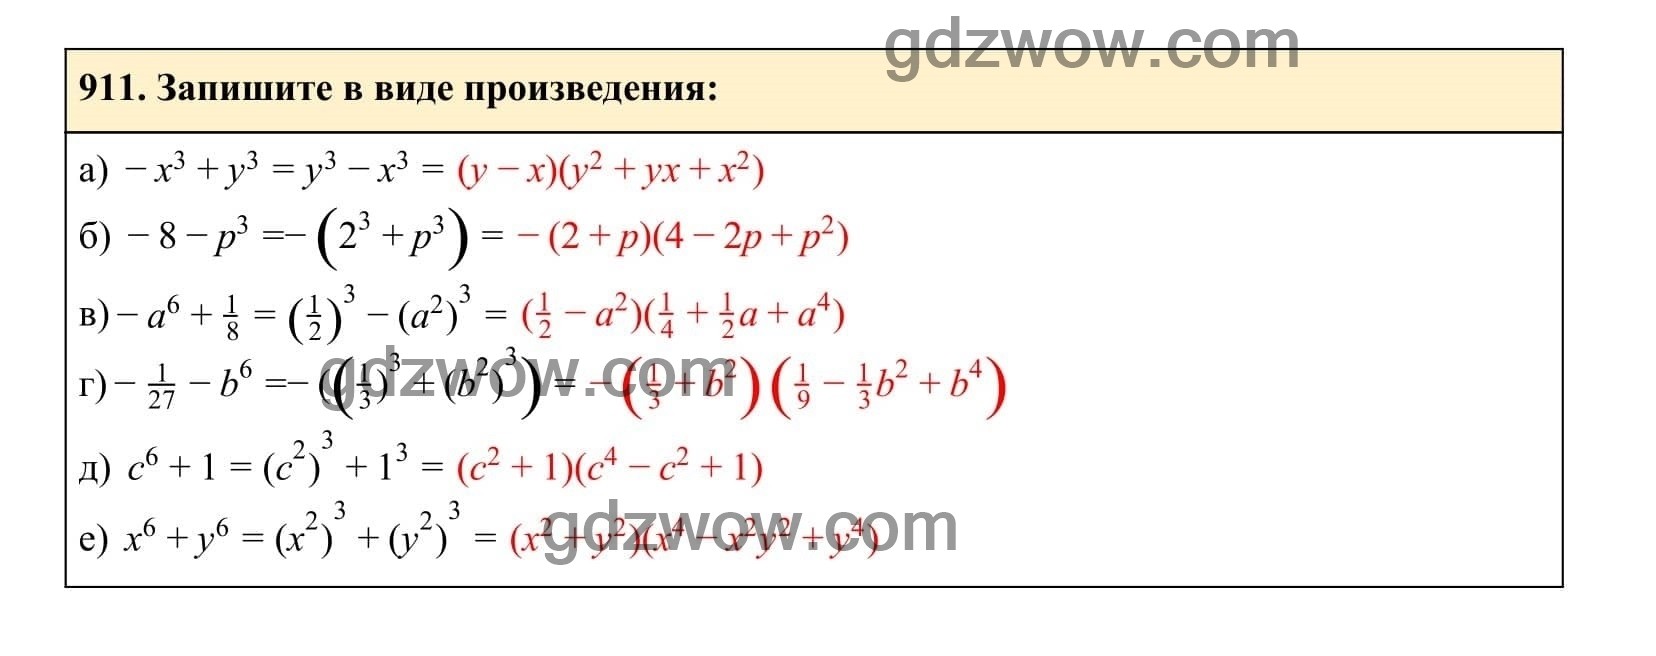 Упражнение 911 - ГДЗ по Алгебре 7 класс Учебник Макарычев (решебник) - GDZwow